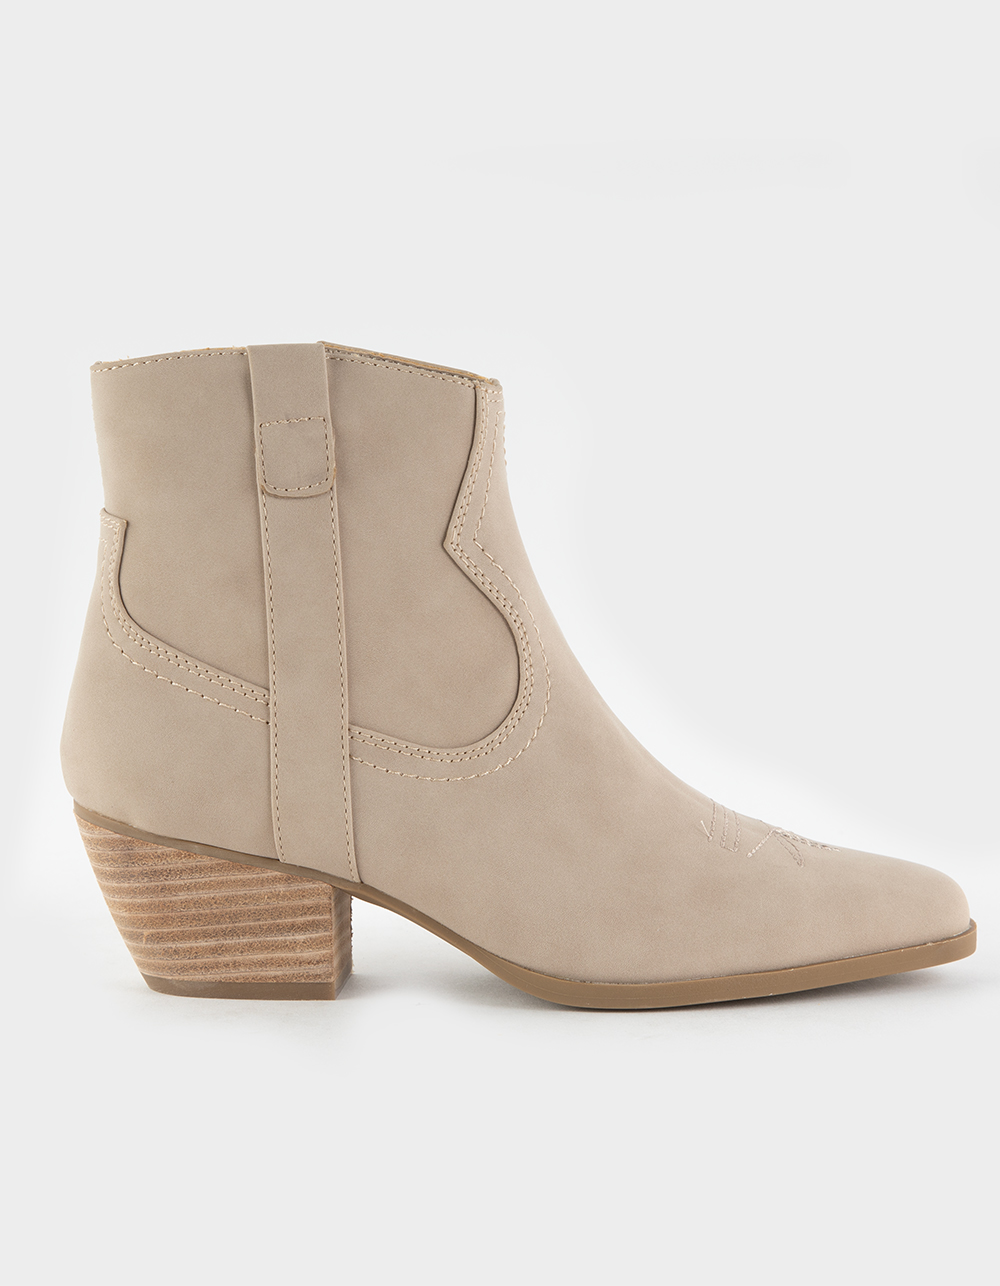 DOLCE VITA Pueblo Short Western Womens Boots - SAND | Tillys